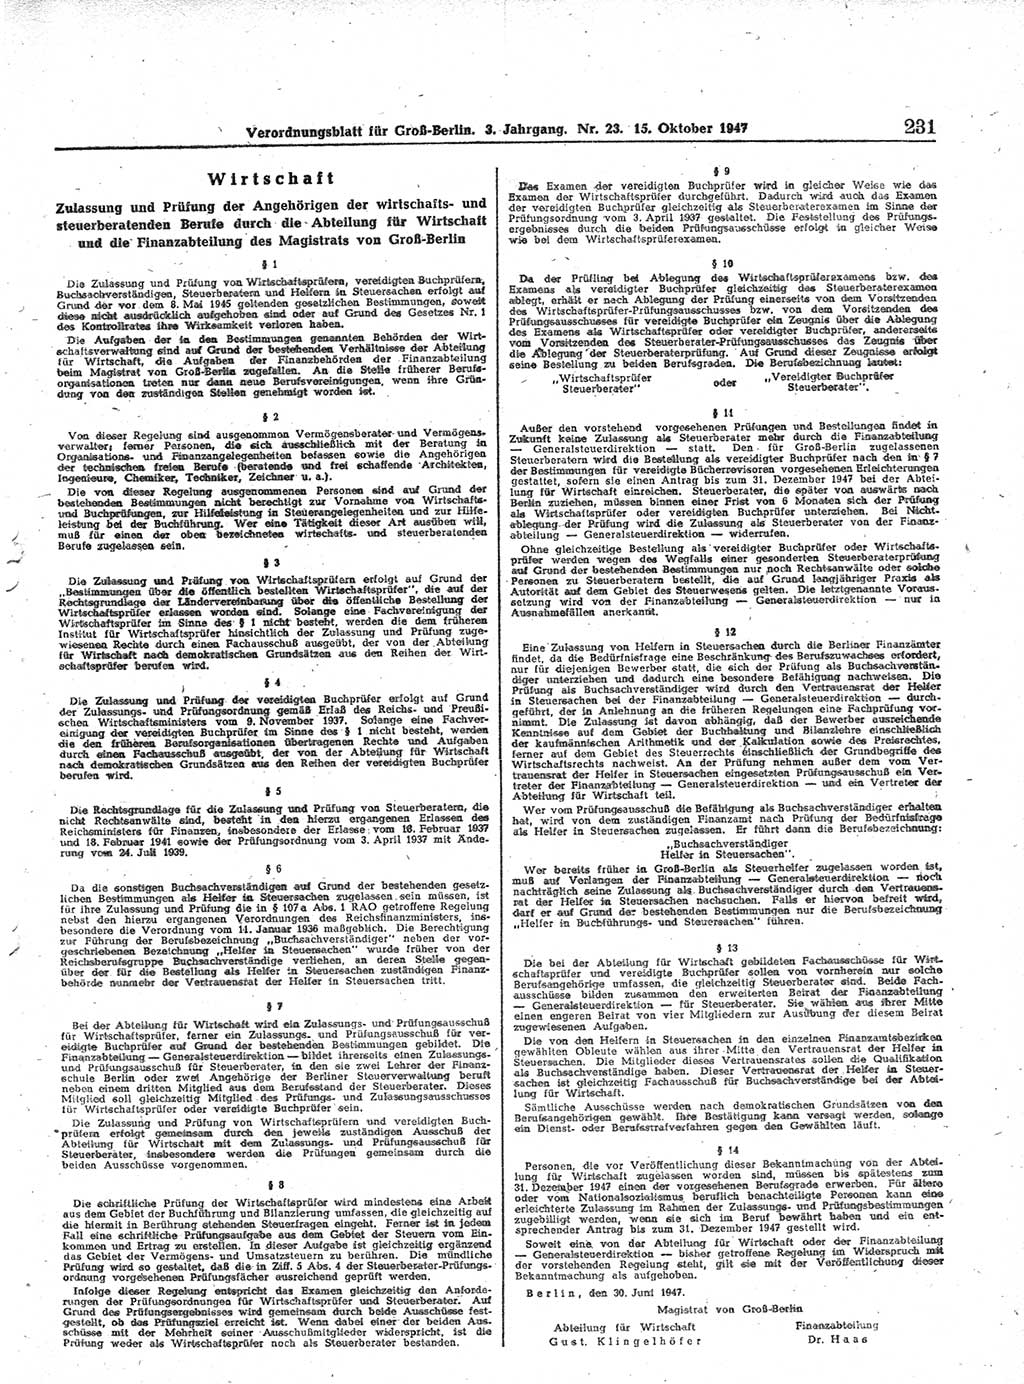 Verordnungsblatt (VOBl.) für Groß-Berlin 1947, Seite 231 (VOBl. Bln. 1947, S. 231)